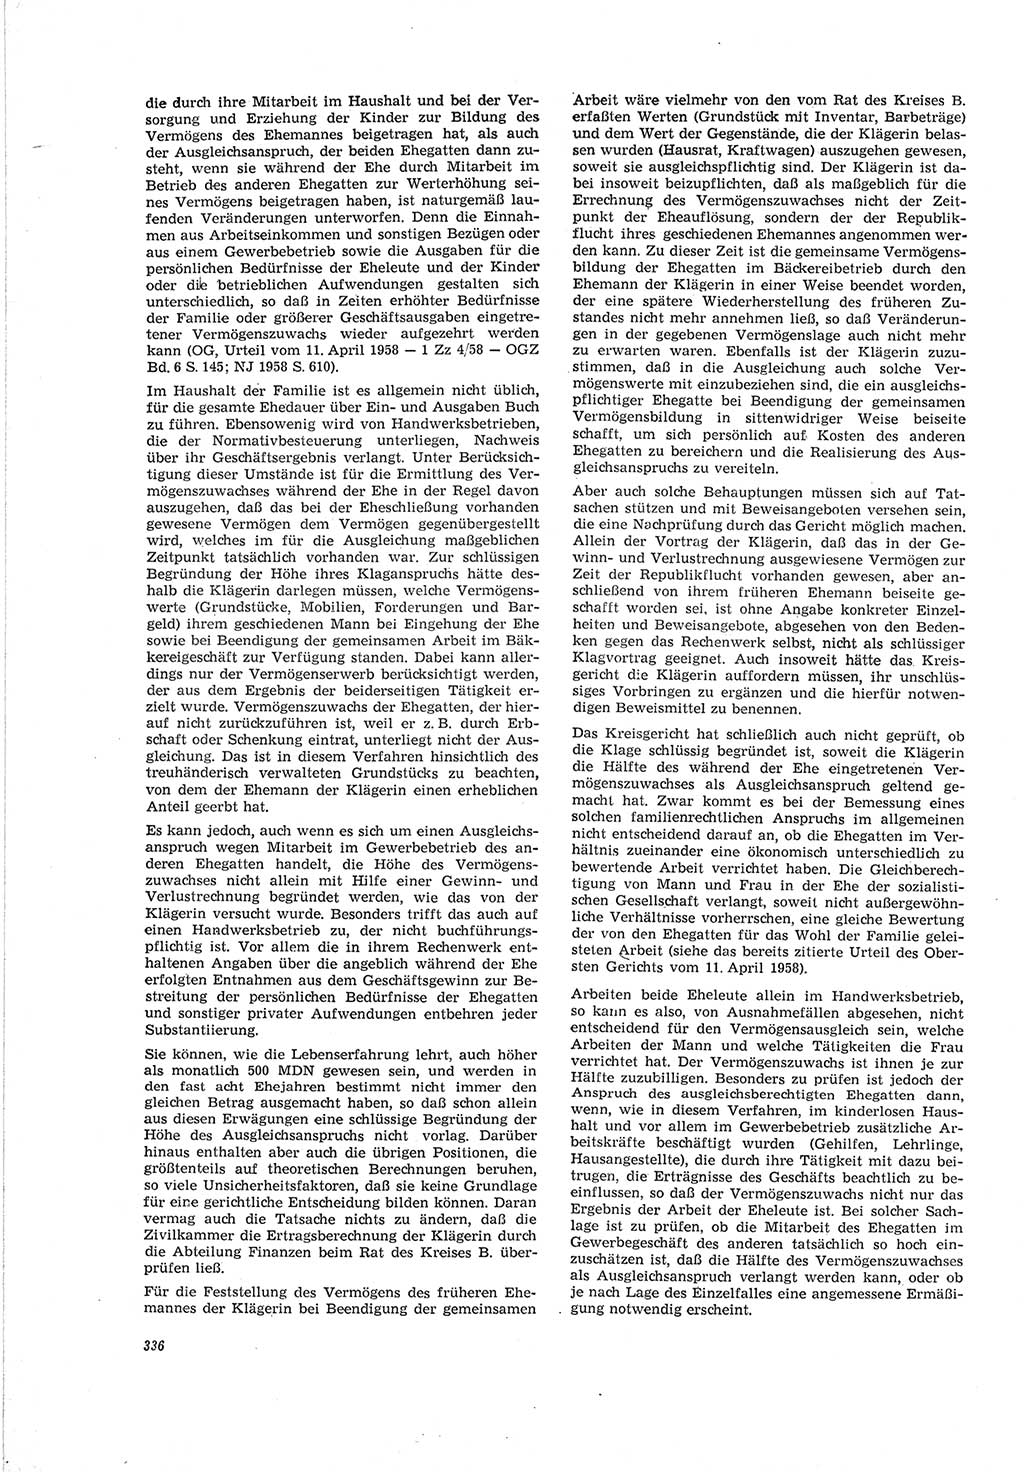 Neue Justiz (NJ), Zeitschrift für Recht und Rechtswissenschaft [Deutsche Demokratische Republik (DDR)], 19. Jahrgang 1965, Seite 336 (NJ DDR 1965, S. 336)